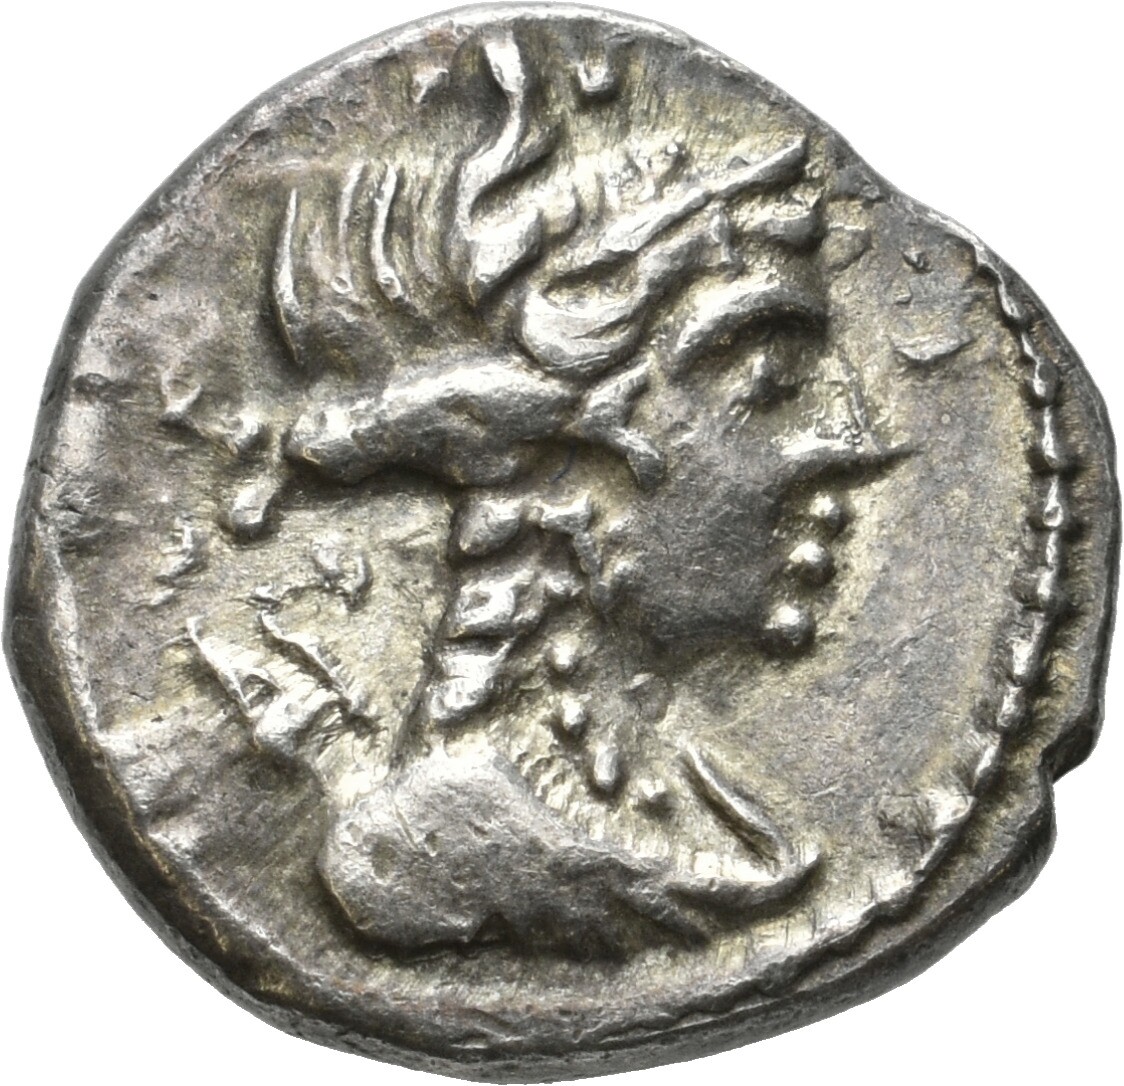 Keltische Silberdrachme aus der römischen Provinz Gallia Cisalpina (Sparkassenverband Baden-Württemberg CC BY-NC-SA)